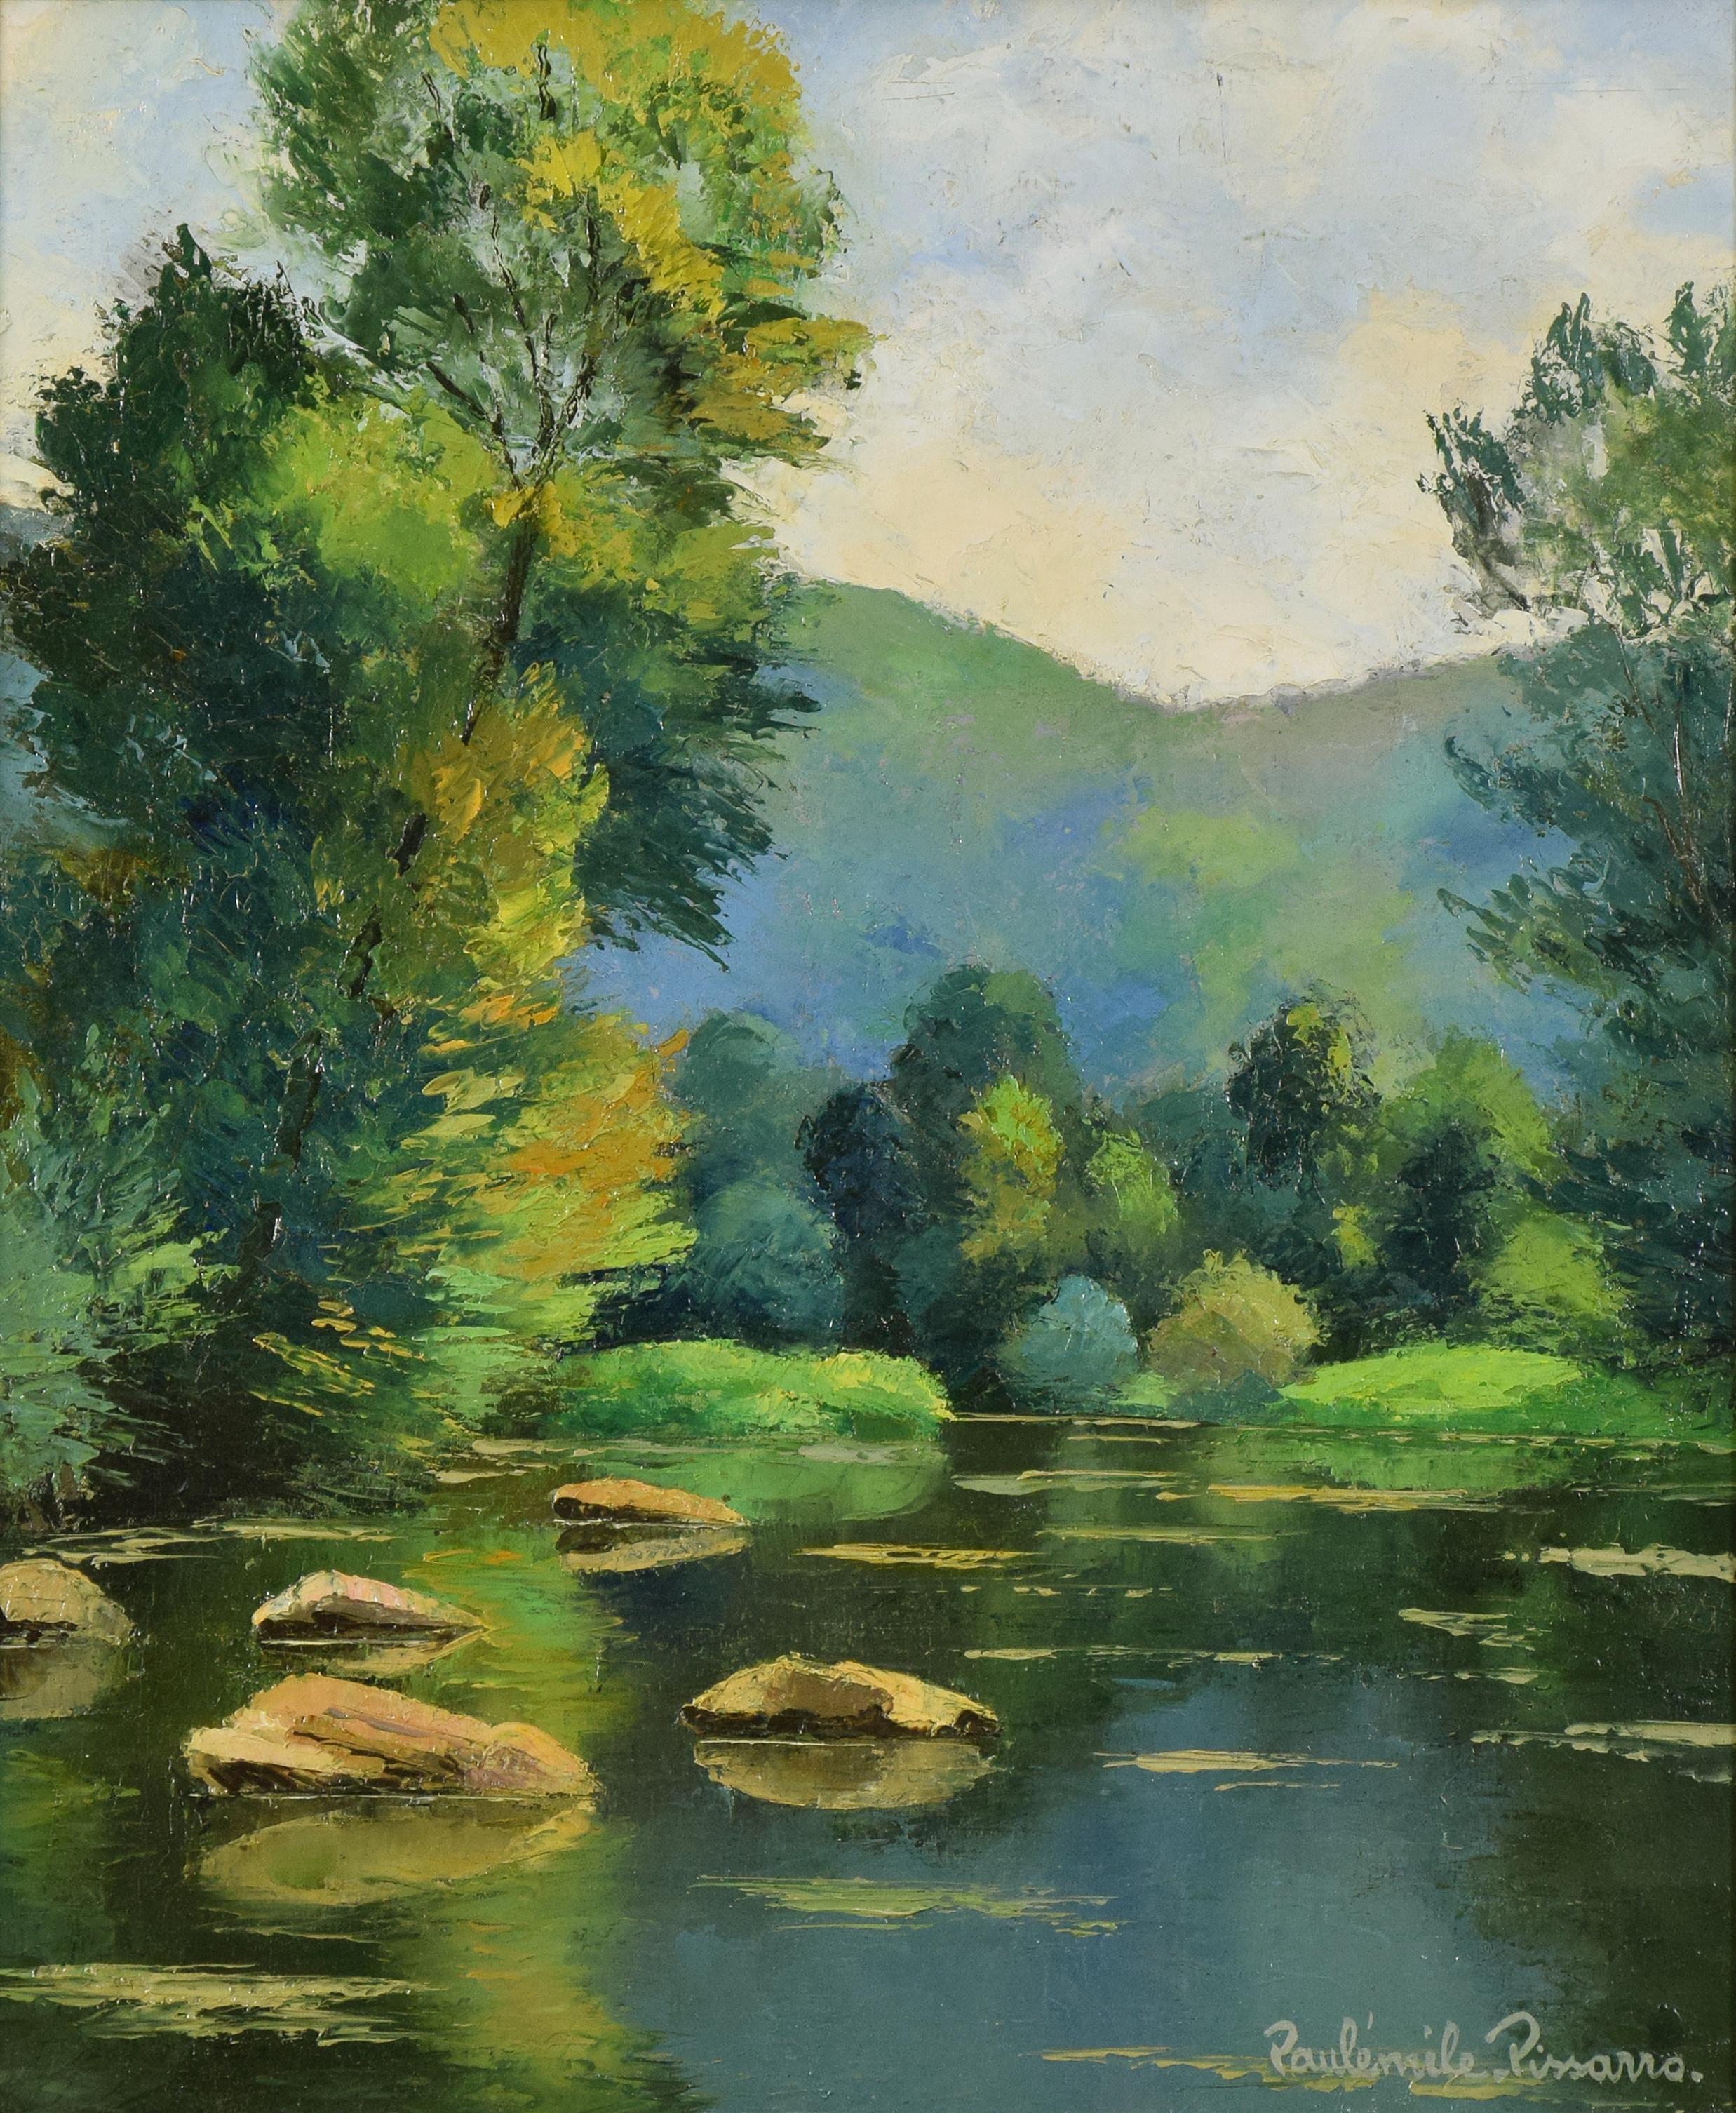 Les Pierres dans l'Orne, PAULÉMILE PISSARRO - Post-Impressionist, Oil, Landscape  - Painting by Paul Emile Pissarro